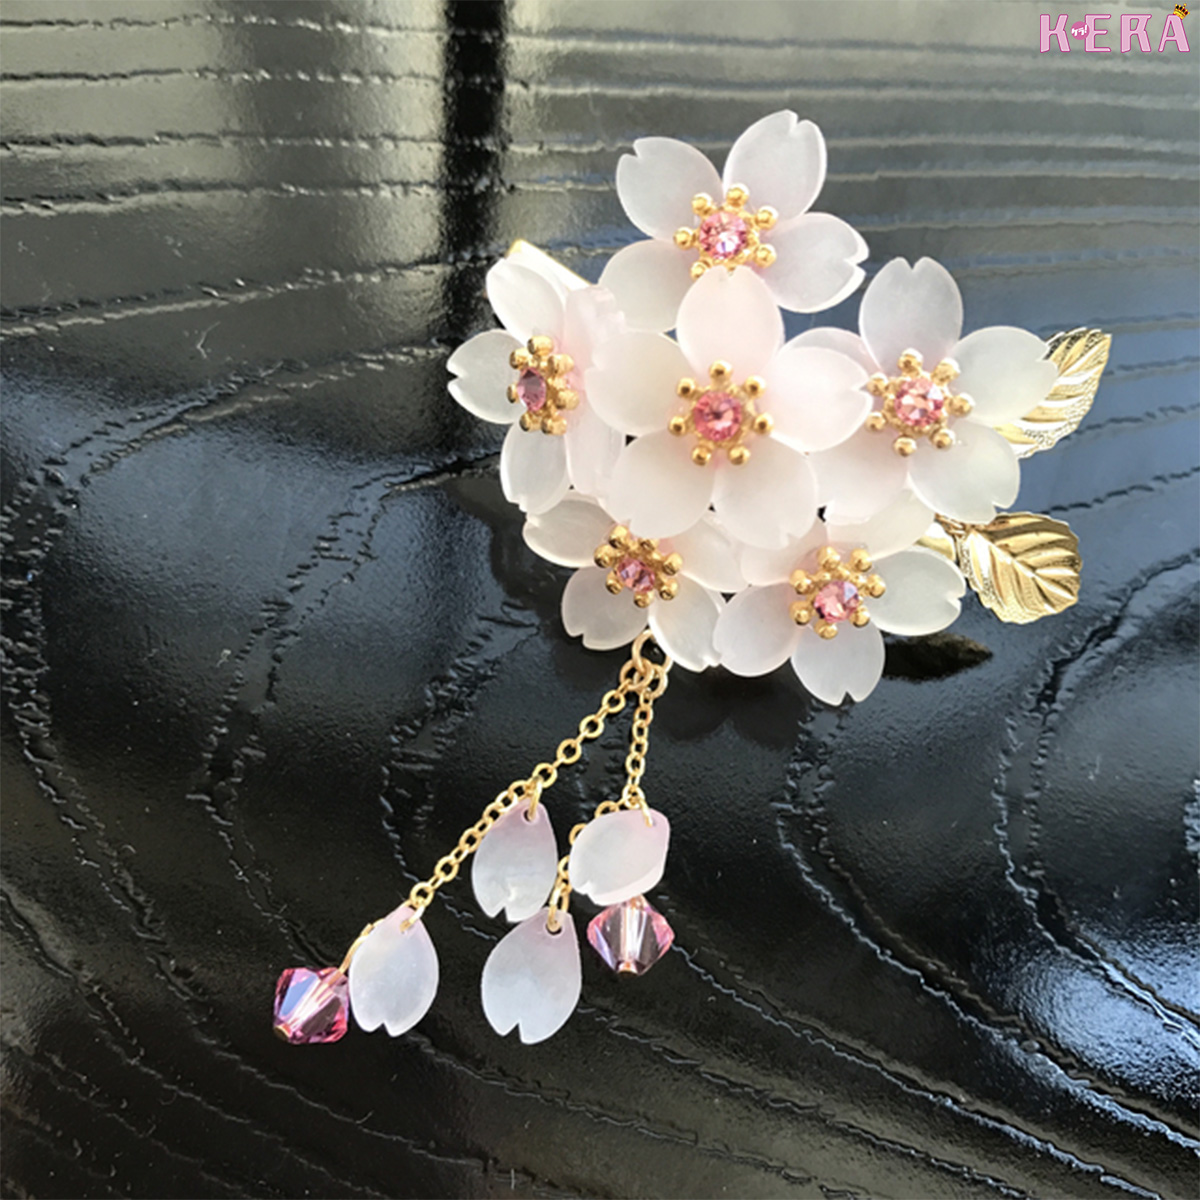 プラバンアクセのチープな印象を払拭するSuzuroのラグジュアリーな桜アクセサリー